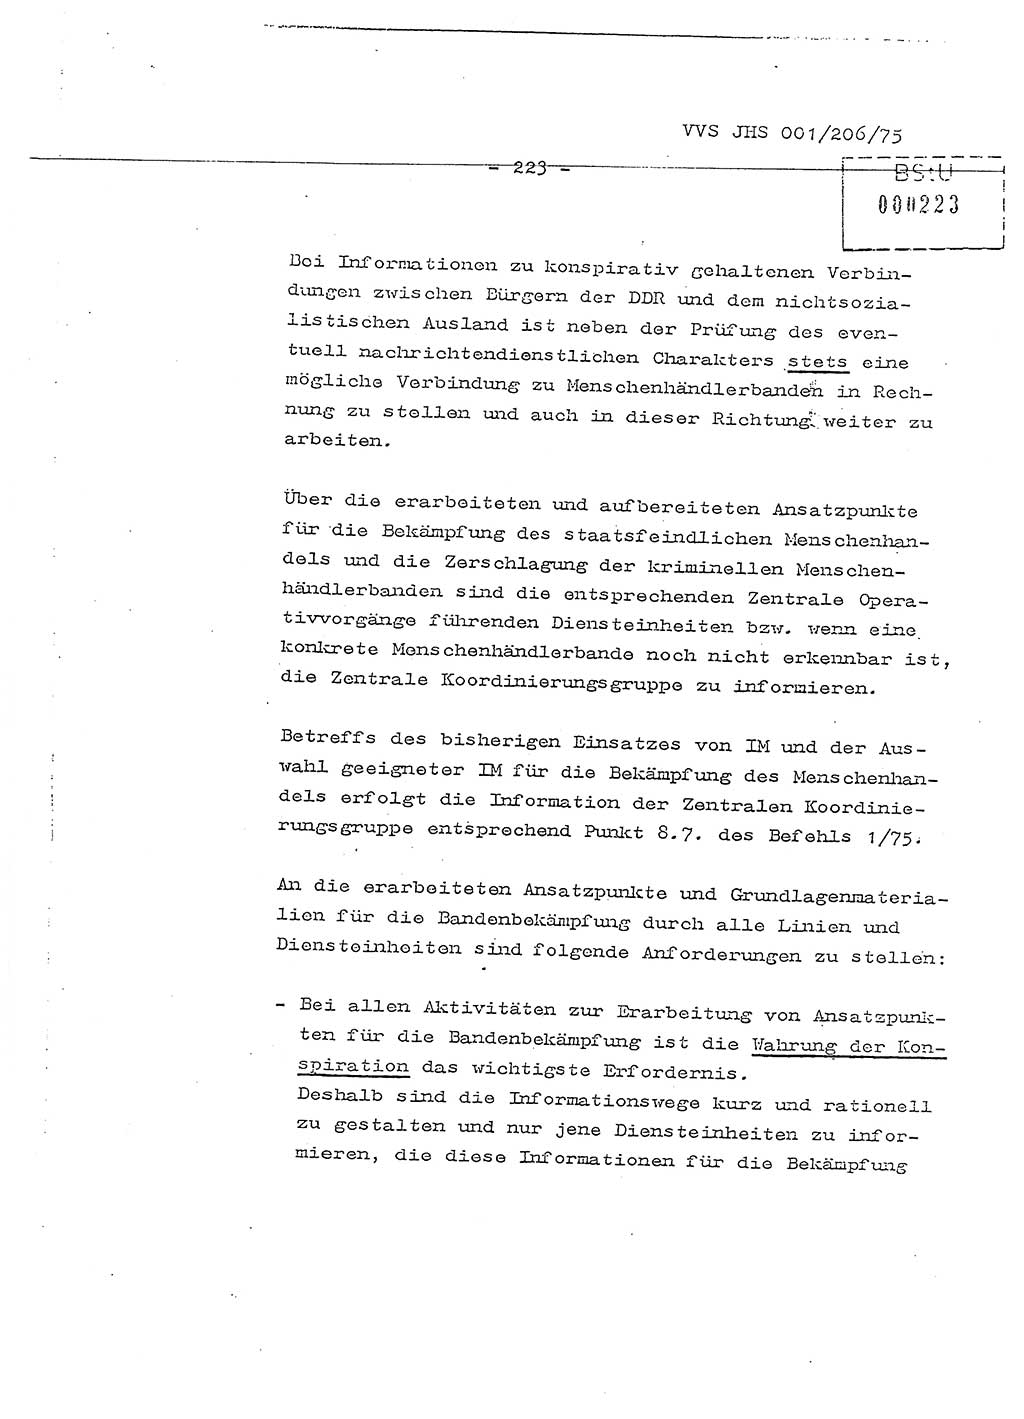 Dissertation Generalmajor Manfred Hummitzsch (Leiter der BV Leipzig), Generalmajor Heinz Fiedler (HA Ⅵ), Oberst Rolf Fister (HA Ⅸ), Ministerium für Staatssicherheit (MfS) [Deutsche Demokratische Republik (DDR)], Juristische Hochschule (JHS), Vertrauliche Verschlußsache (VVS) 001-206/75, Potsdam 1975, Seite 223 (Diss. MfS DDR JHS VVS 001-206/75 1975, S. 223)